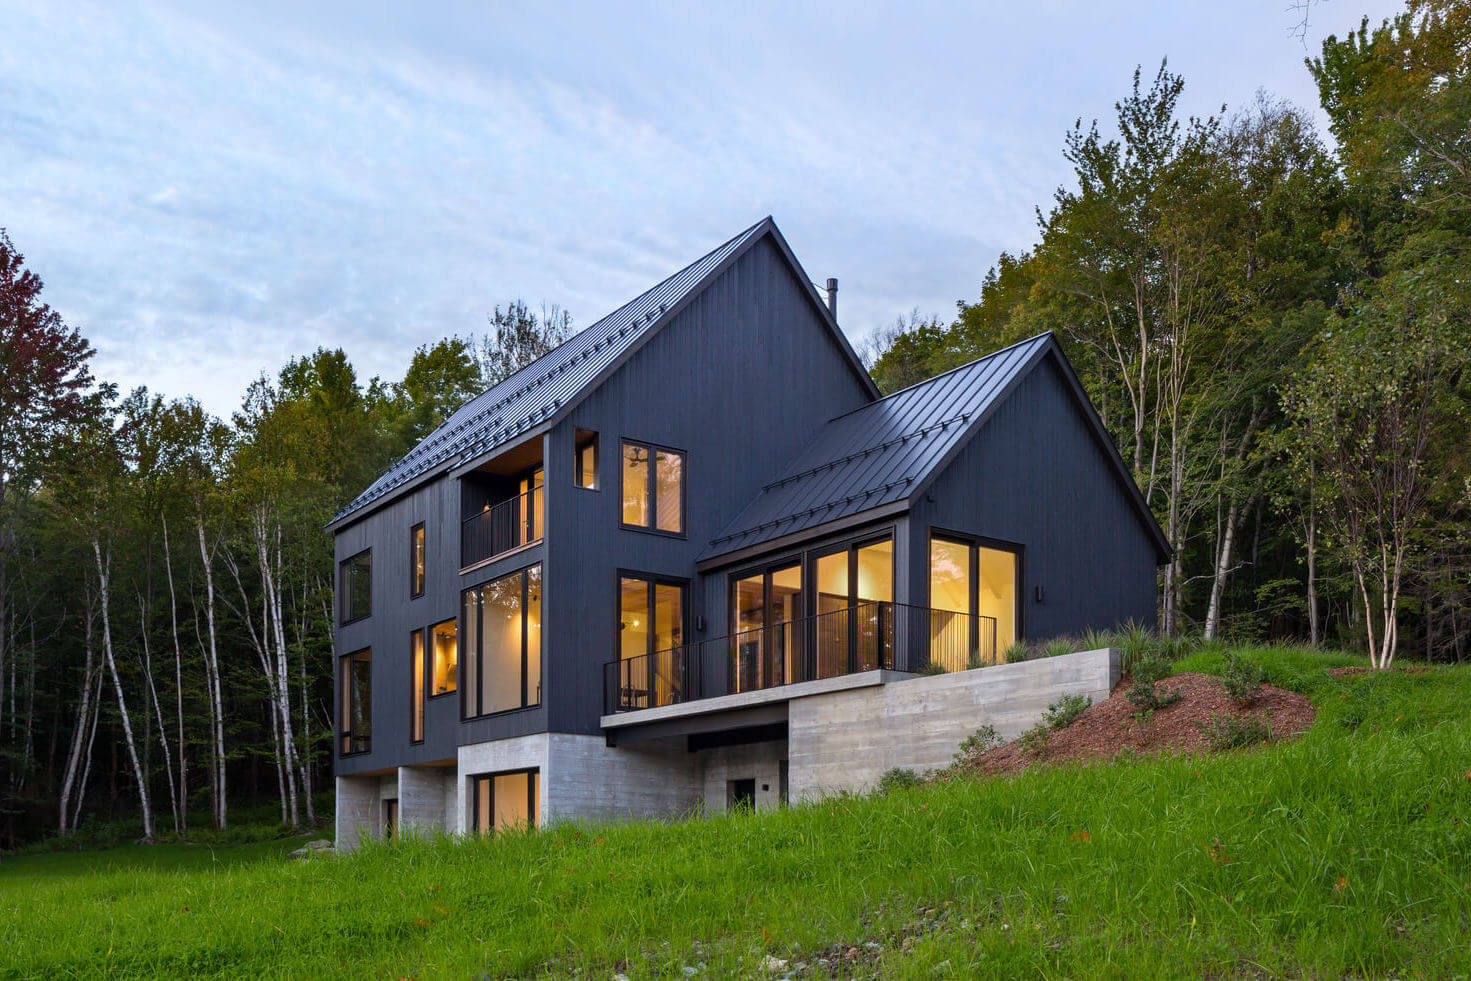 Elemental House by Elizabeth Herrmann Architecture + Design